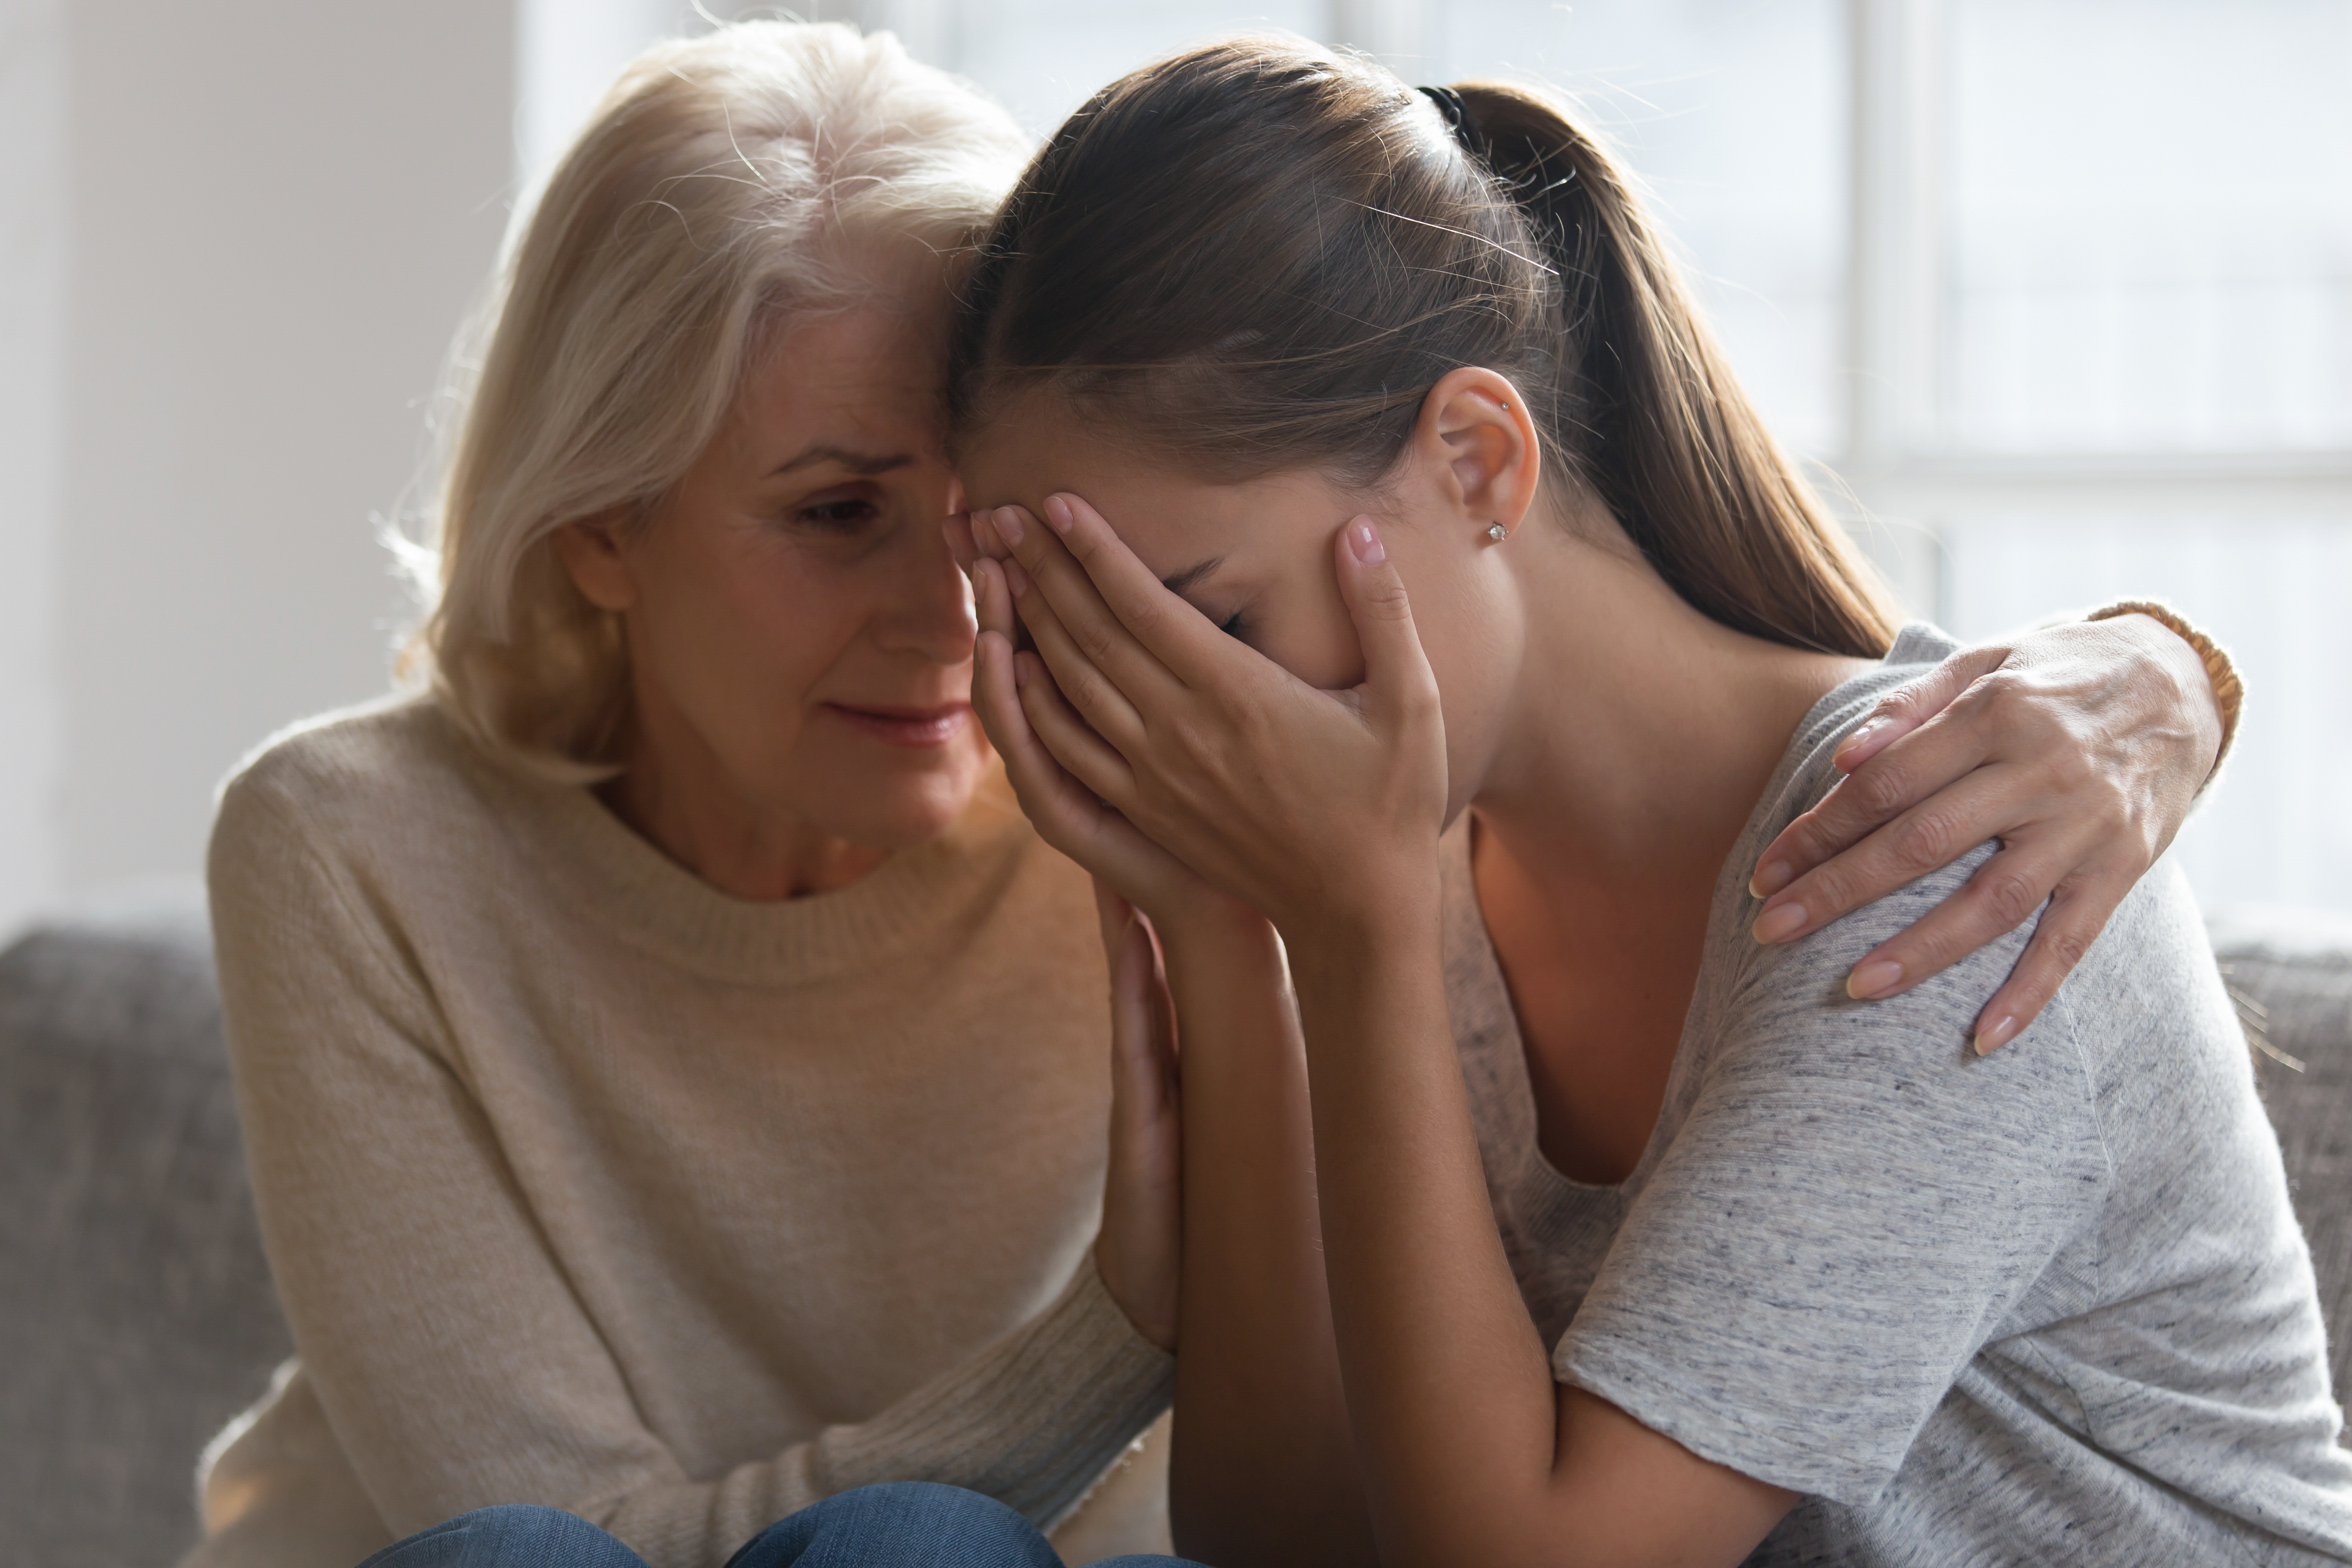 Worried mother comforting her daughter | Source: Shutterstock